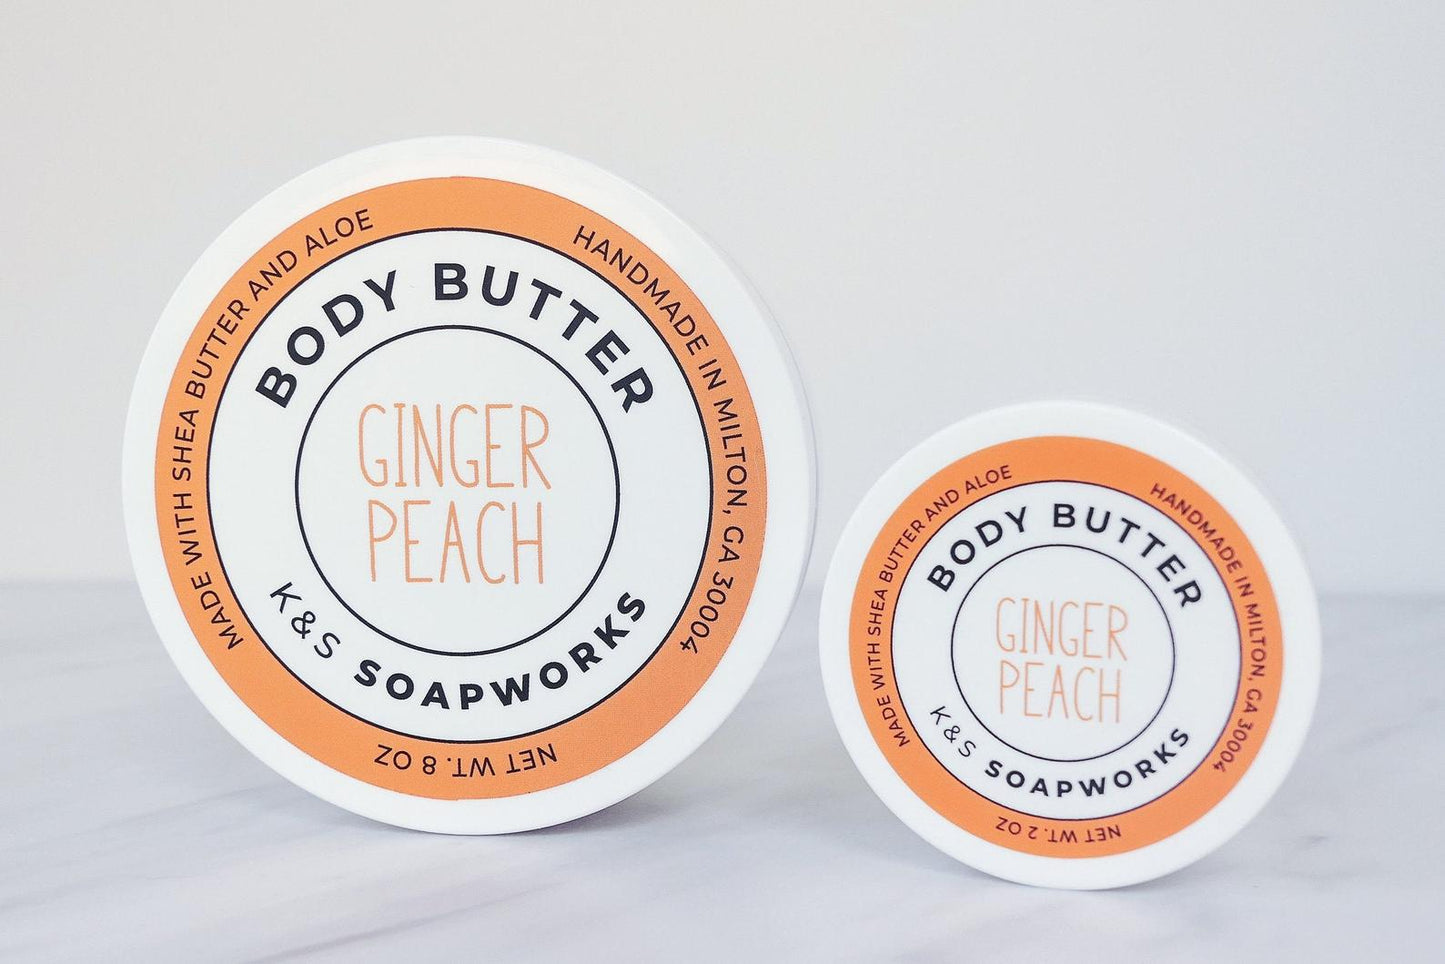 Ginger Peach body butter